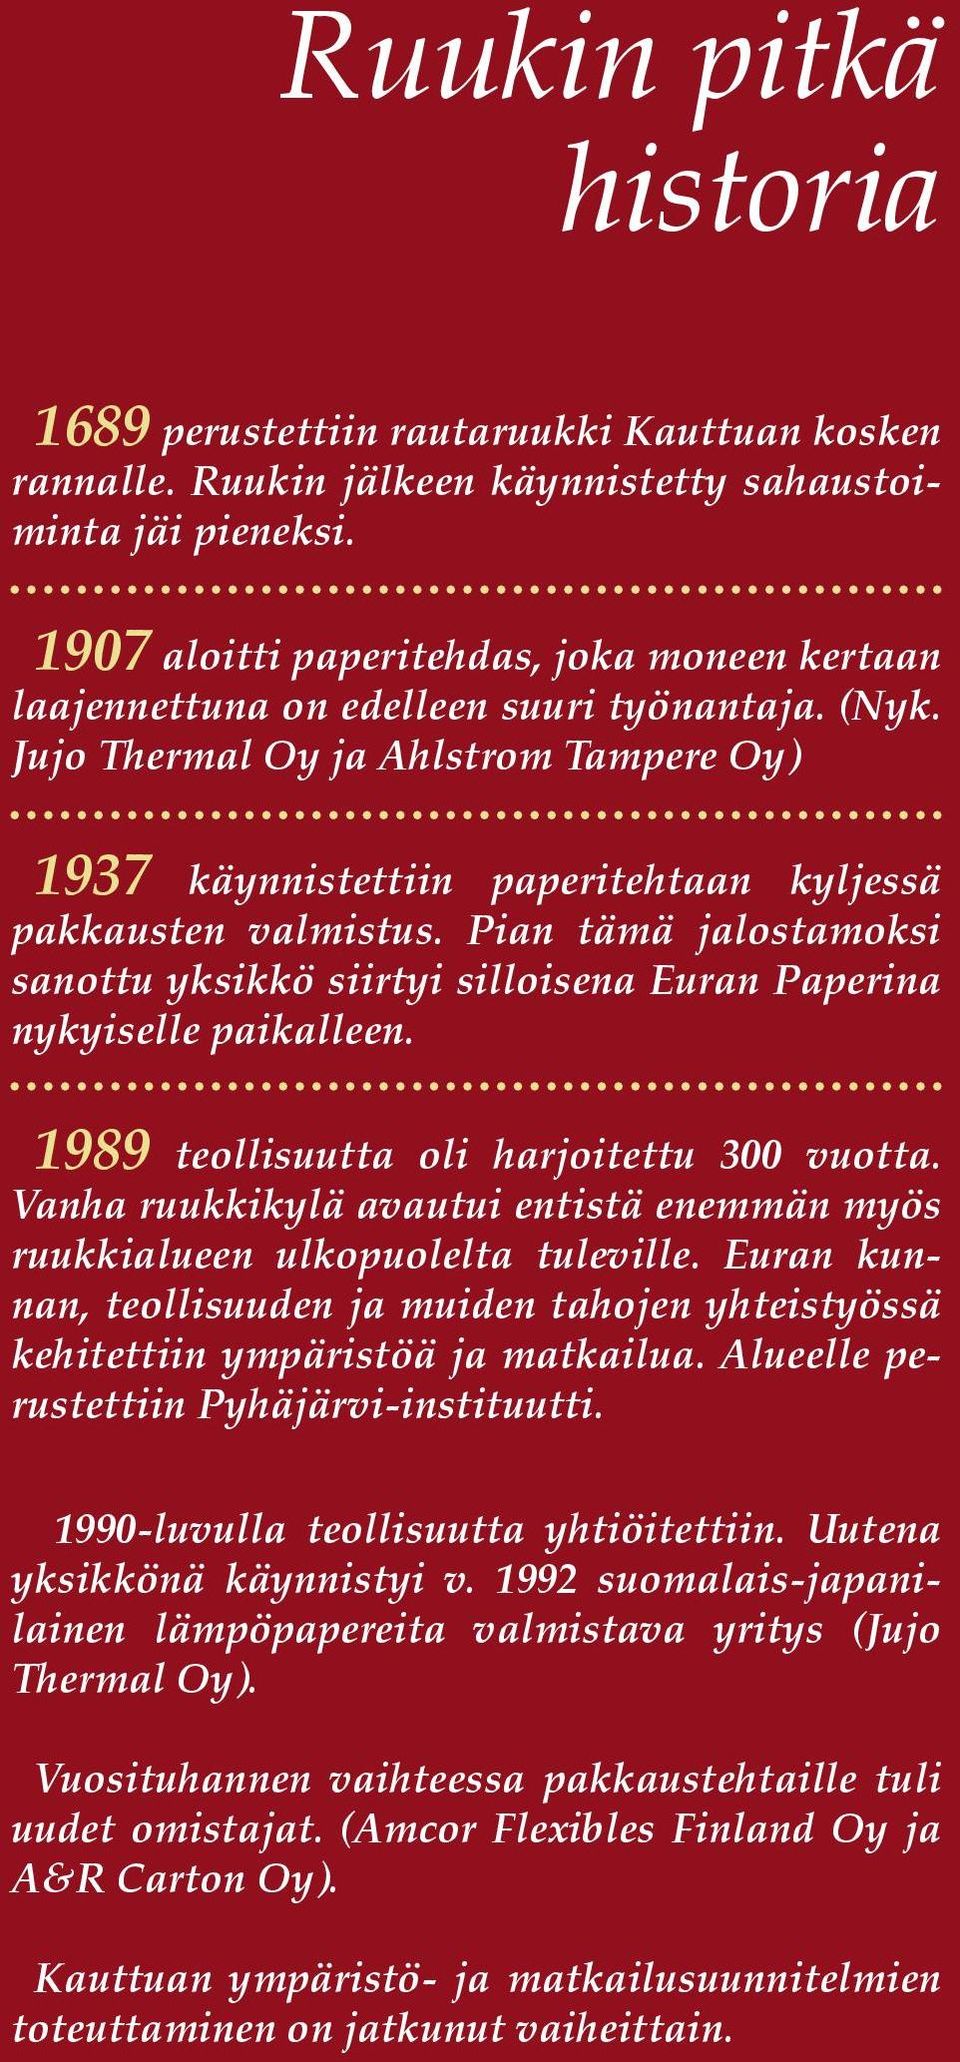 Jujo Thermal Oy ja Ahlstrom Tampere Oy) 1937 käynnistettiin paperitehtaan kyljessä pakkausten valmistus. Pian tämä jalostamoksi sanottu yksikkö siirtyi silloisena Euran Paperina nykyiselle paikalleen.